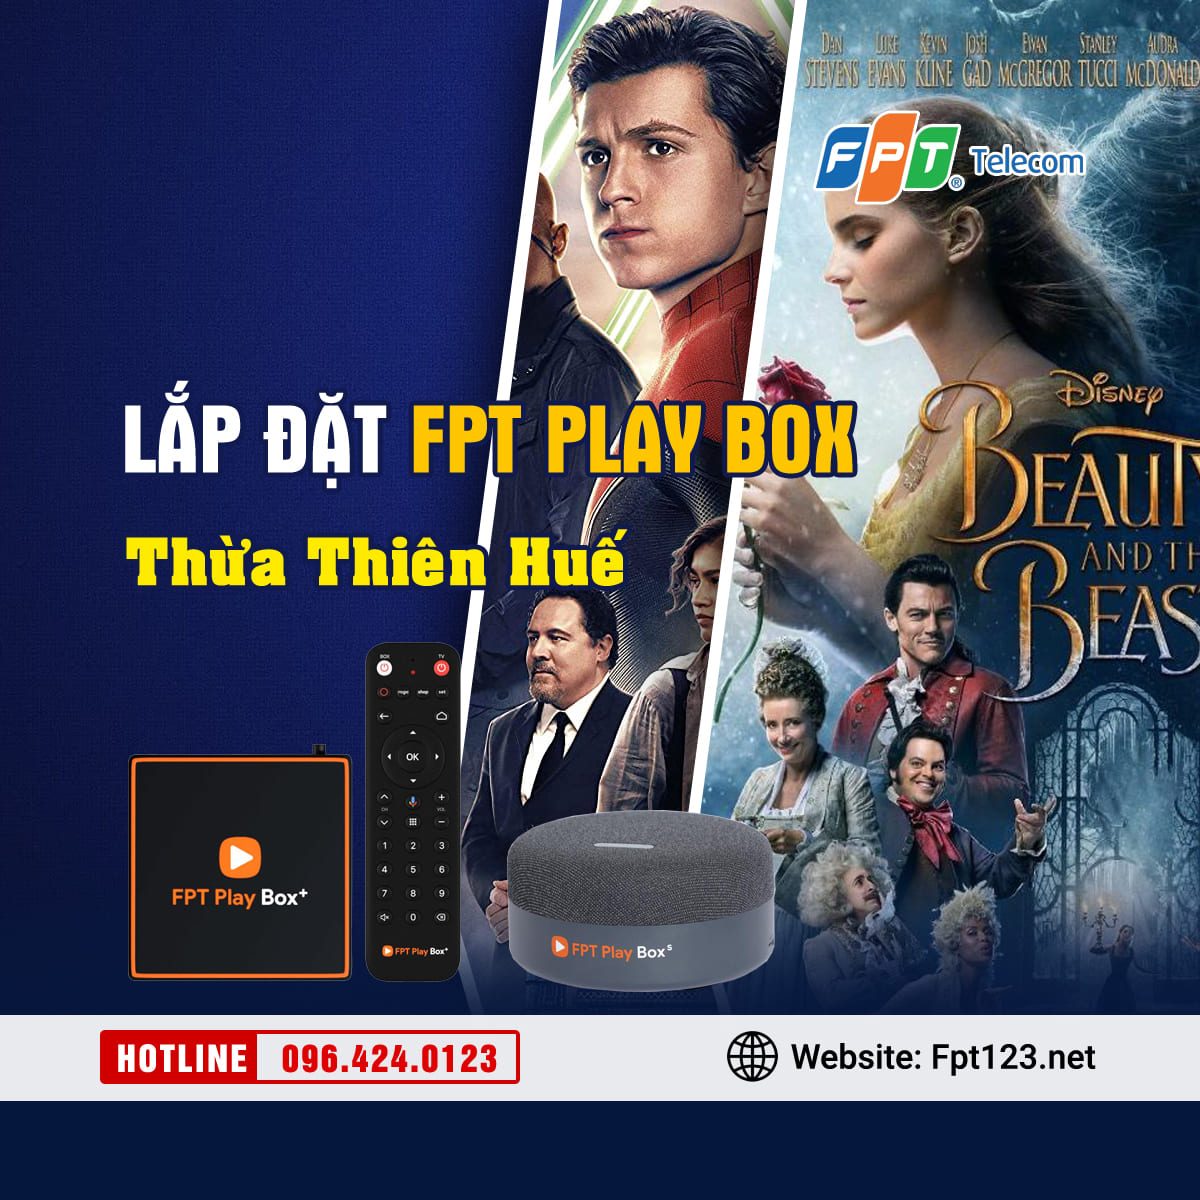 Lắp đặt FPT Play Box tại Thừa Thiên Huế